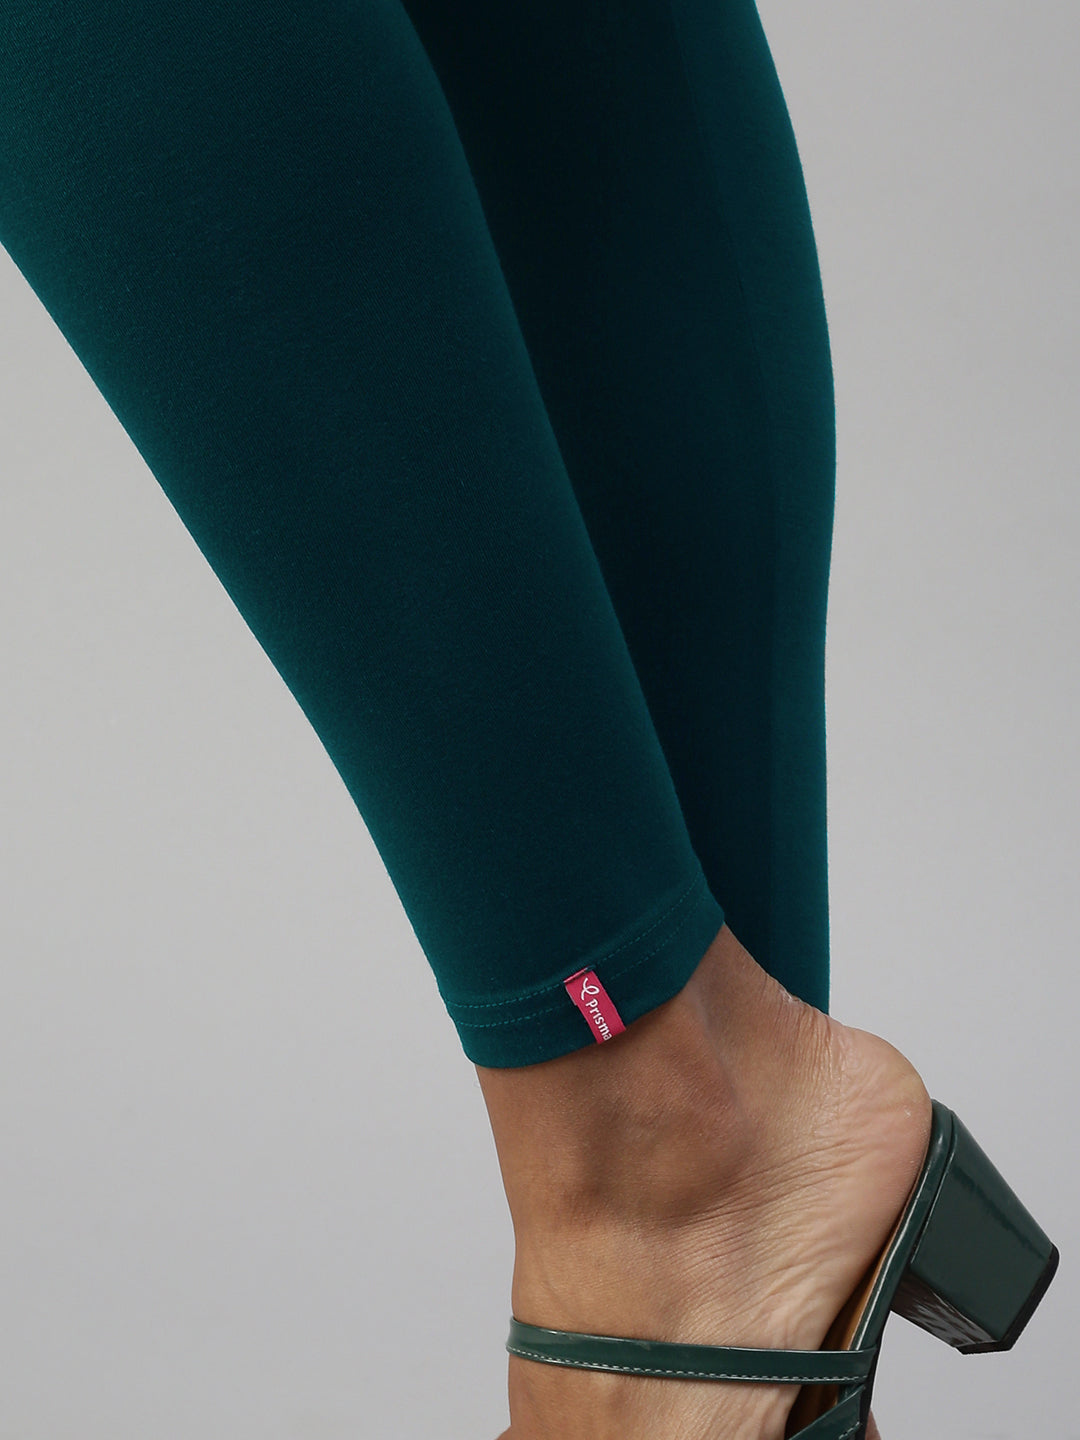 Shop Prisma's Dark Lavender Ankle Leggings for Women